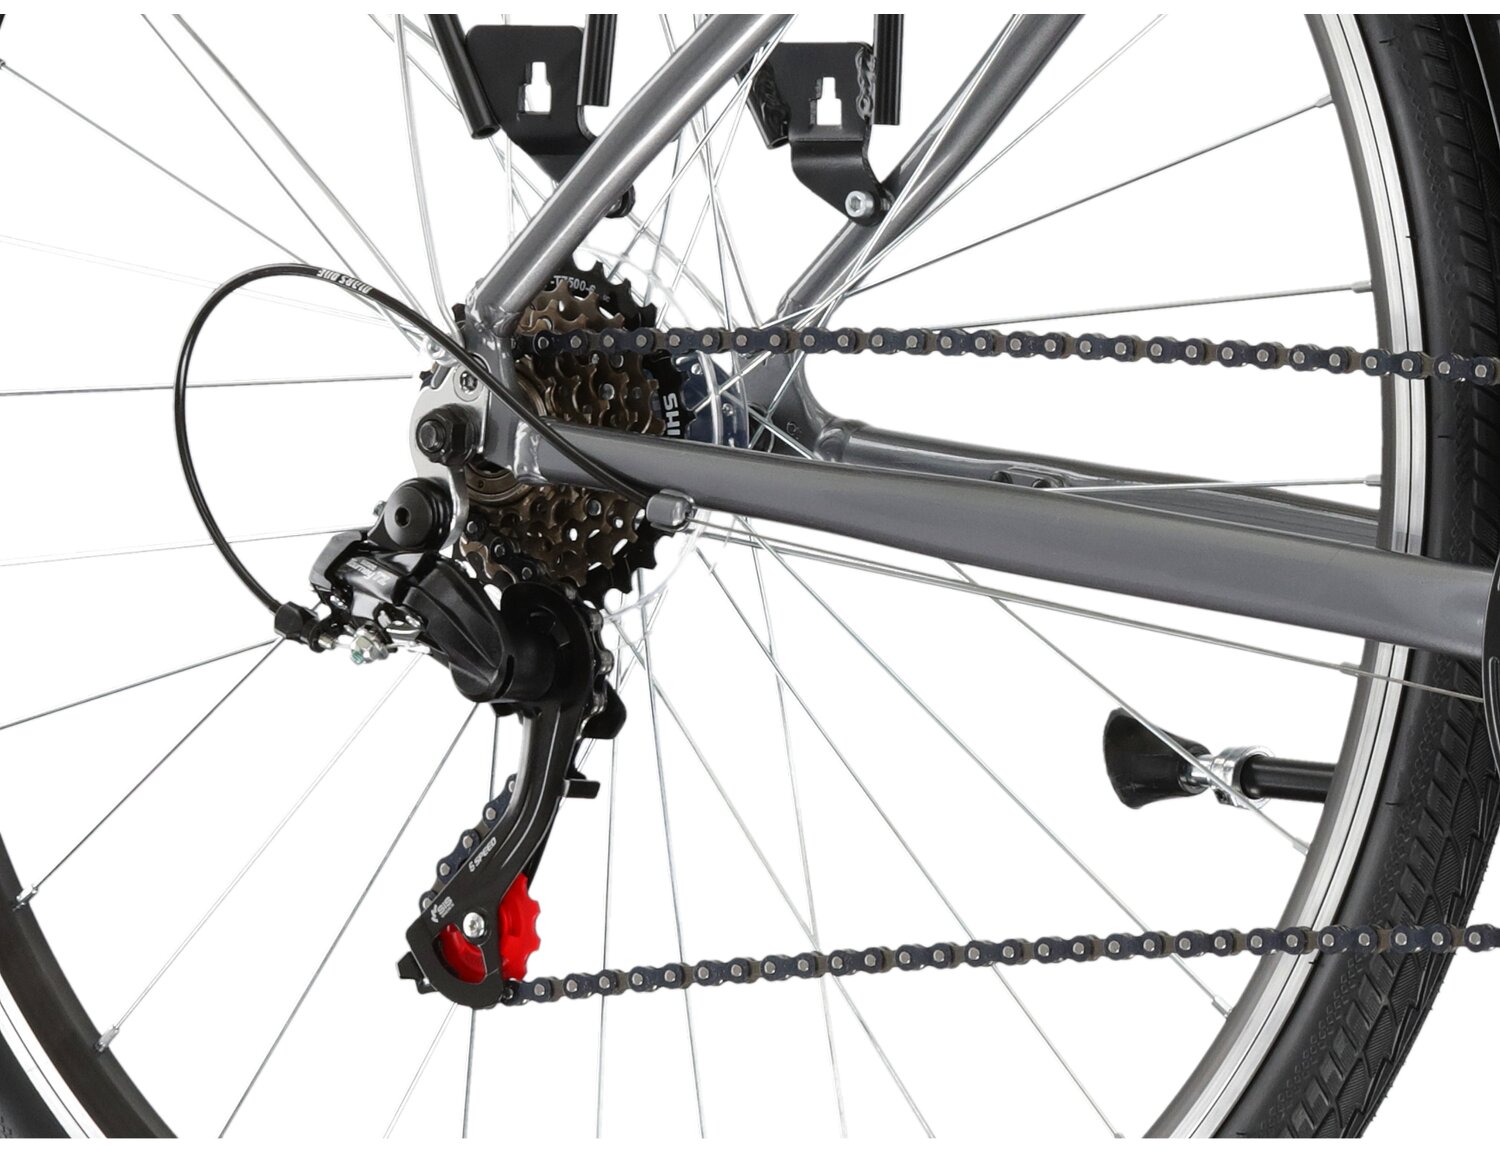  Tylna sześciobiegowa przerzutka Shimano Tourney TZ500 oraz hamulce v-brake w rowerze miejskim KROSS Sentio 1.0 